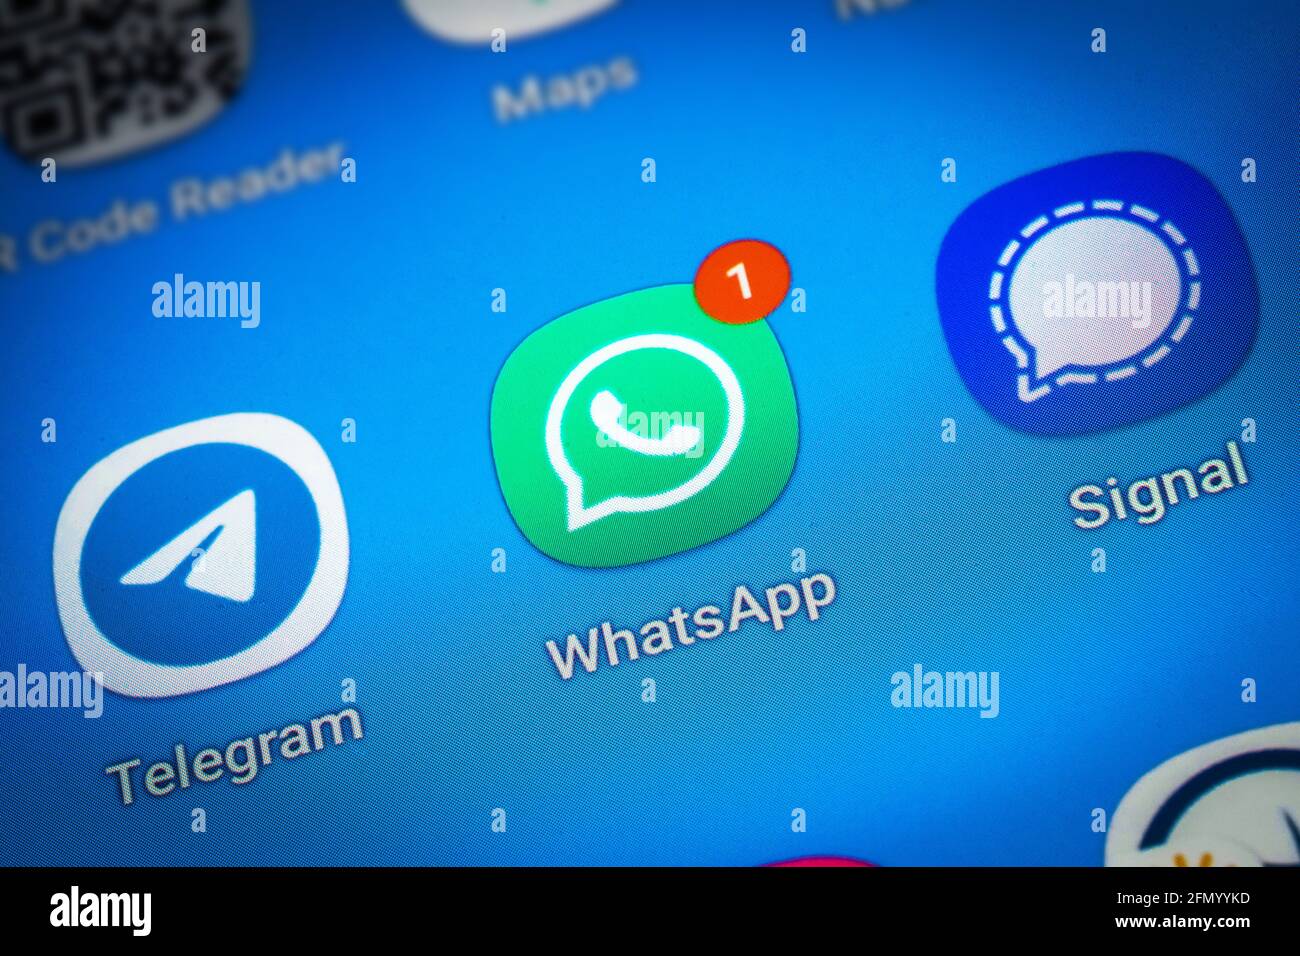 Logos der Social-Media-Messenger-Apps Telegram, WhatsApp und Signal auf dem Bildschirm eines Smartphones Stockfoto